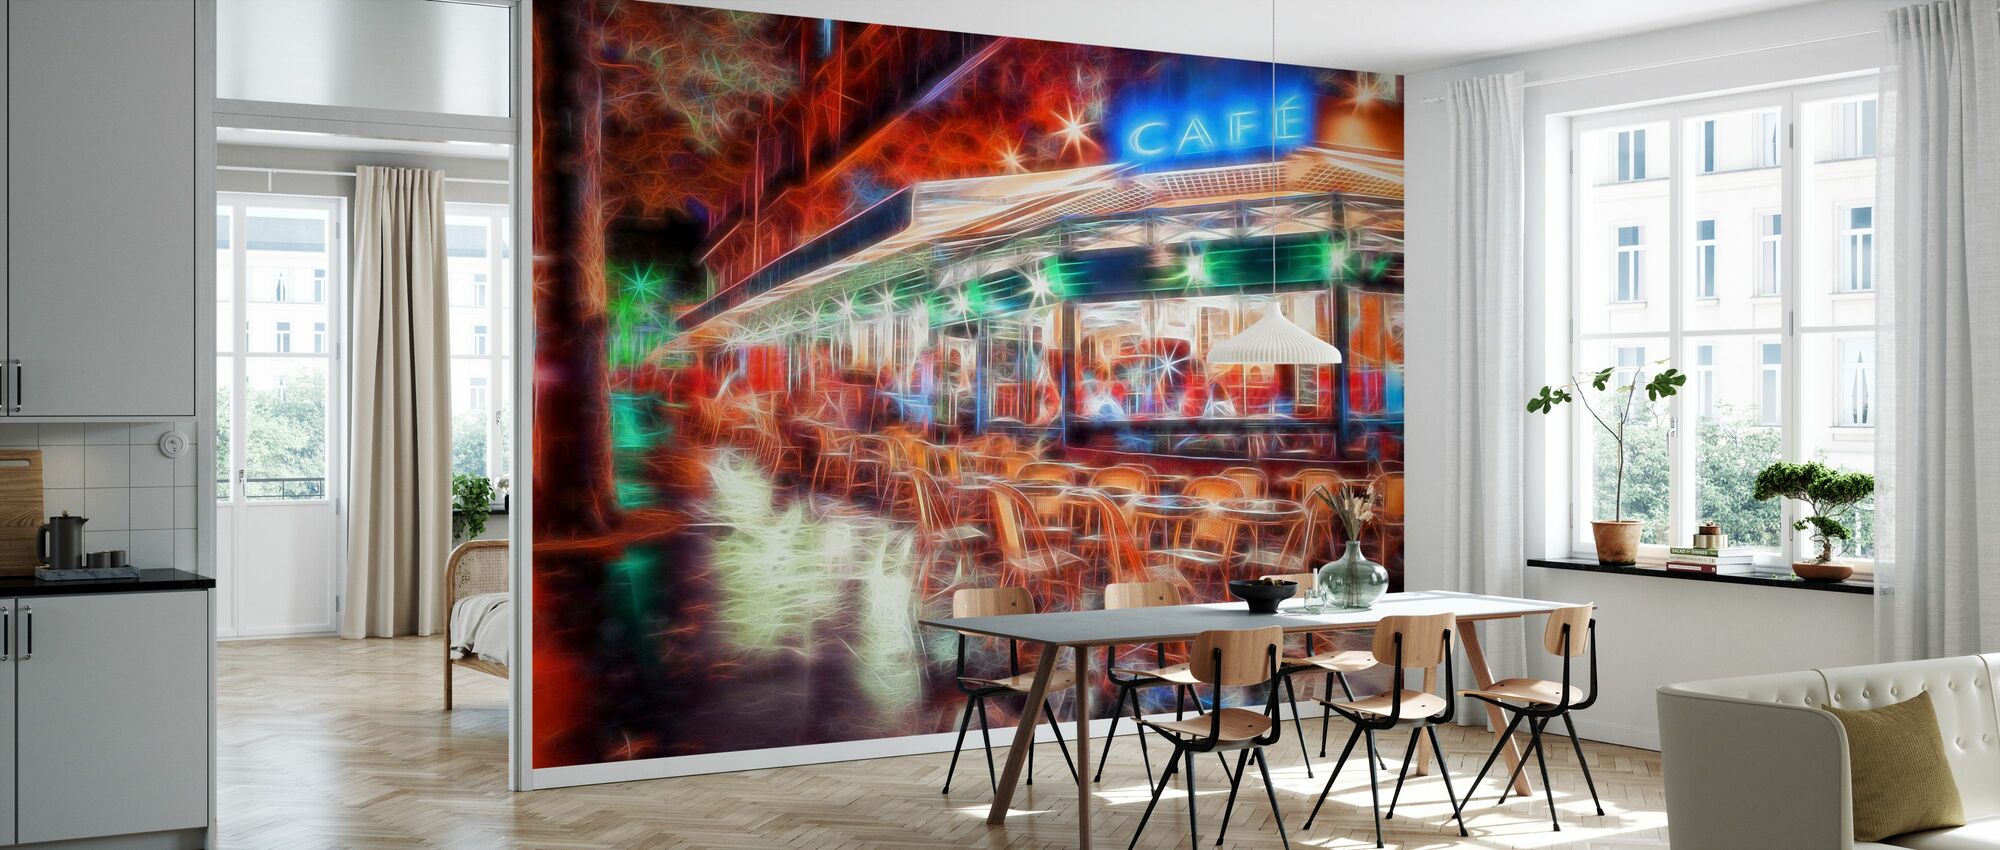 Paris Café – enchanting wall mural – Photowall